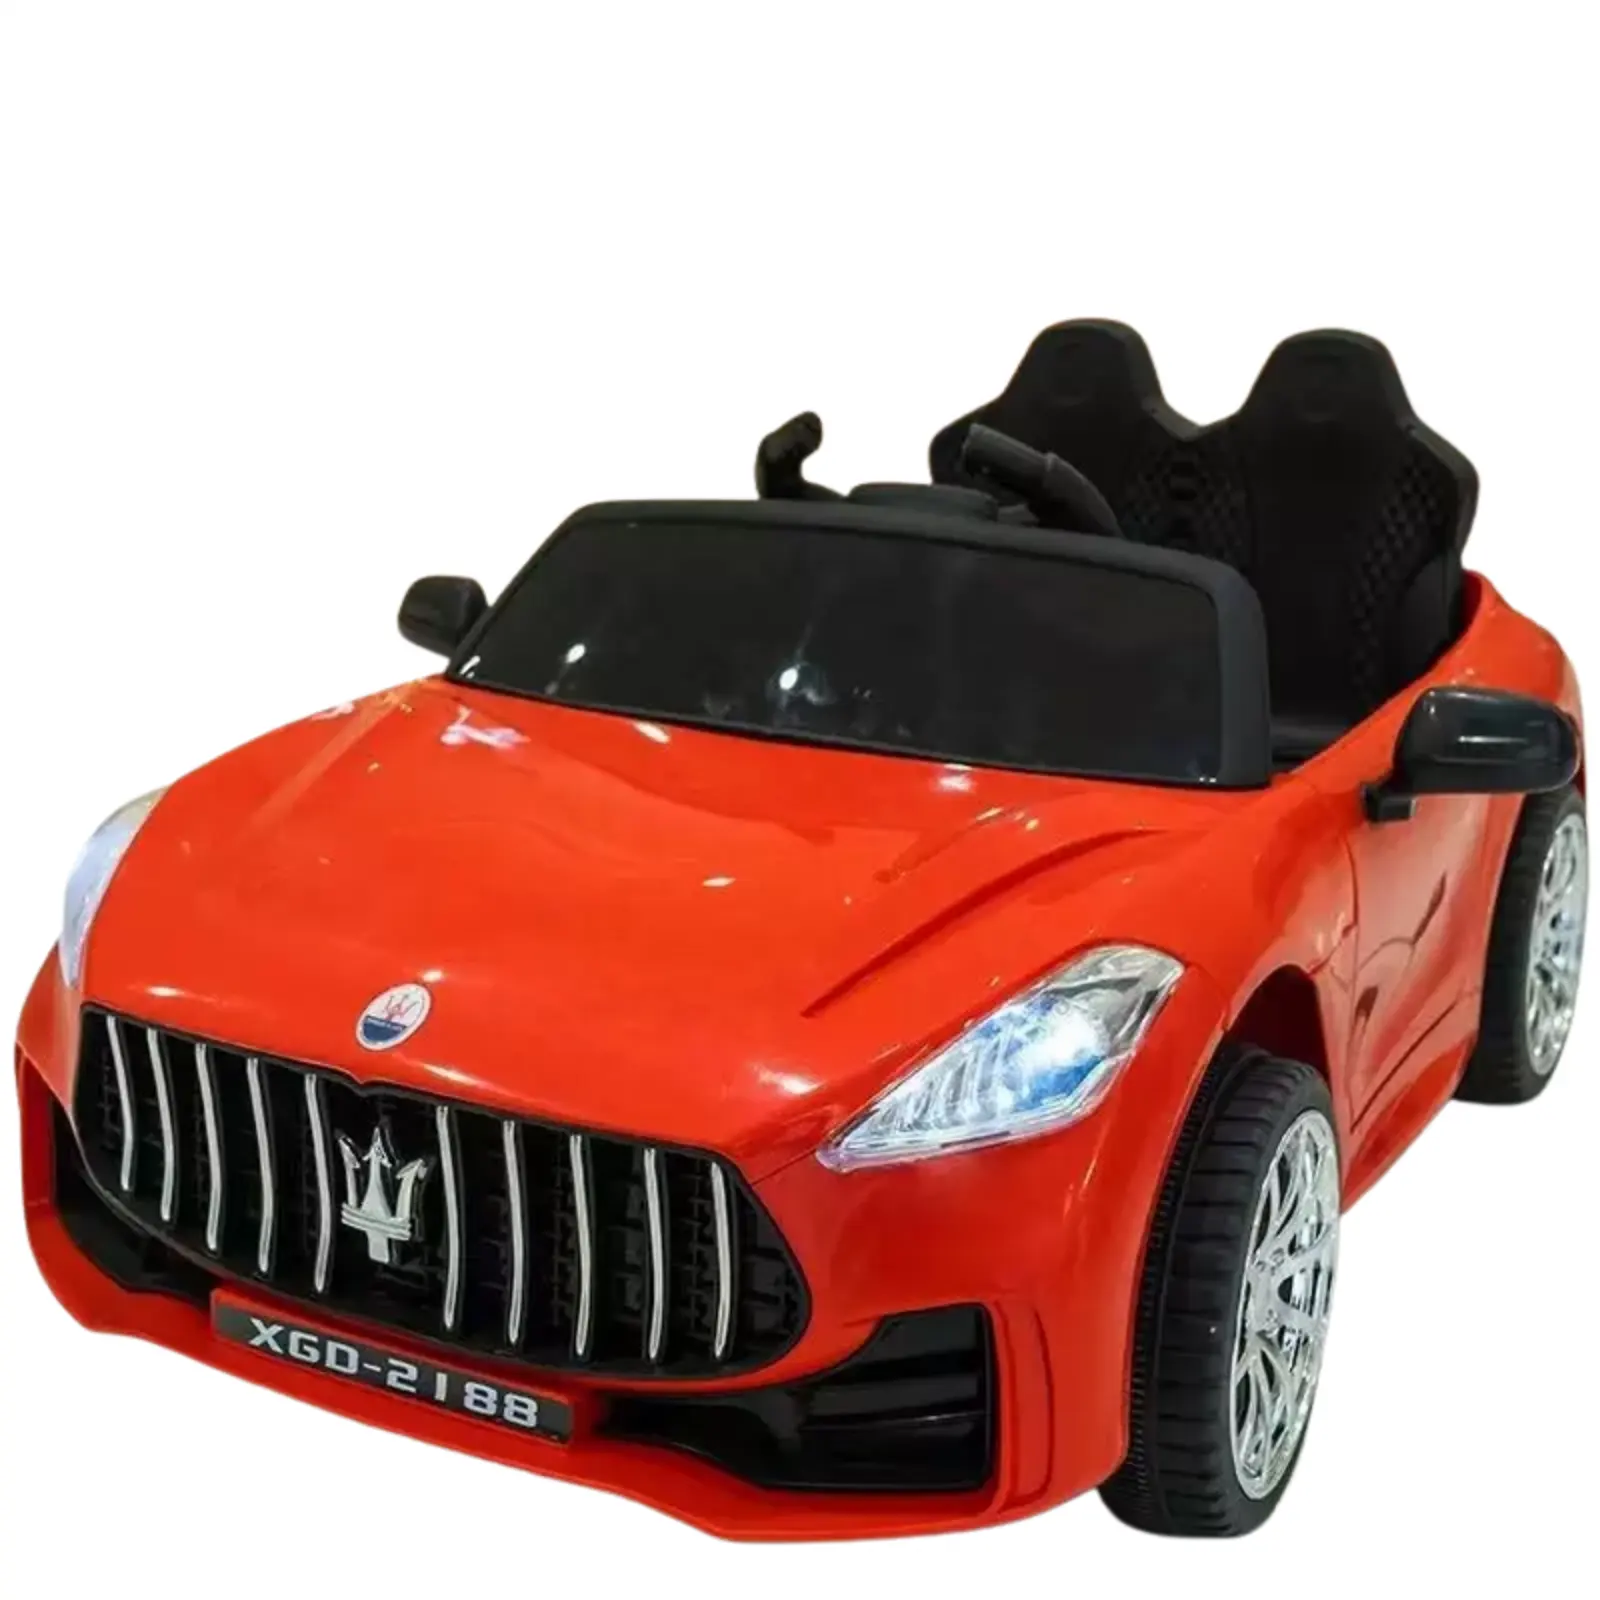 รถเด็กไฟฟ้าสี่ล้อควบคุมระยะไกลรถของเล่นเด็กสามารถนั่งในรถเด็กคู่ผู้ใหญ่